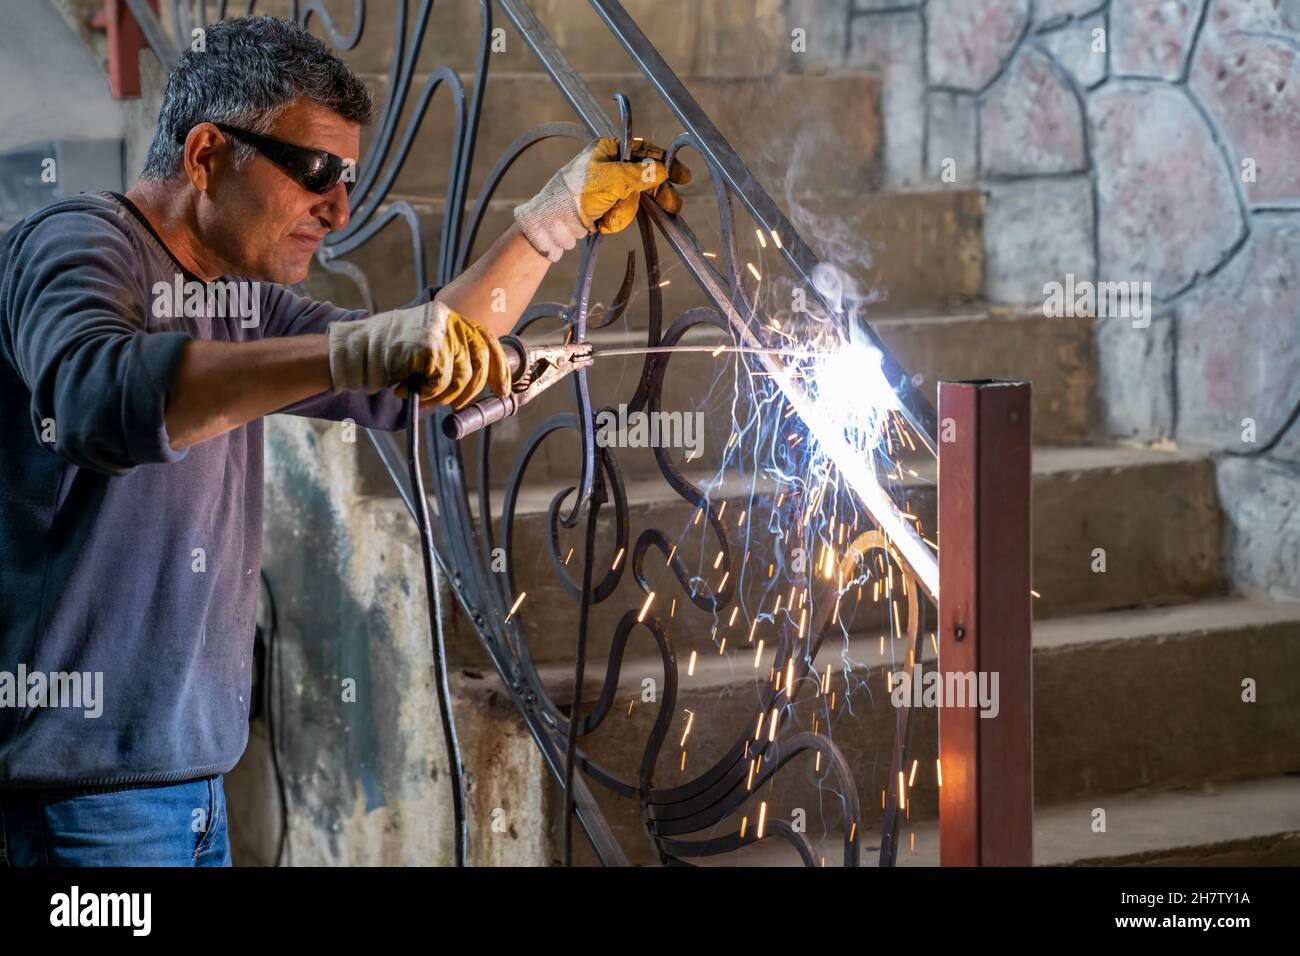 Mann mit Schutzbrille schweißt Metall mit Schweißmaschine. Funken vom Schweißen fliegen zu den Seiten. Stockfoto